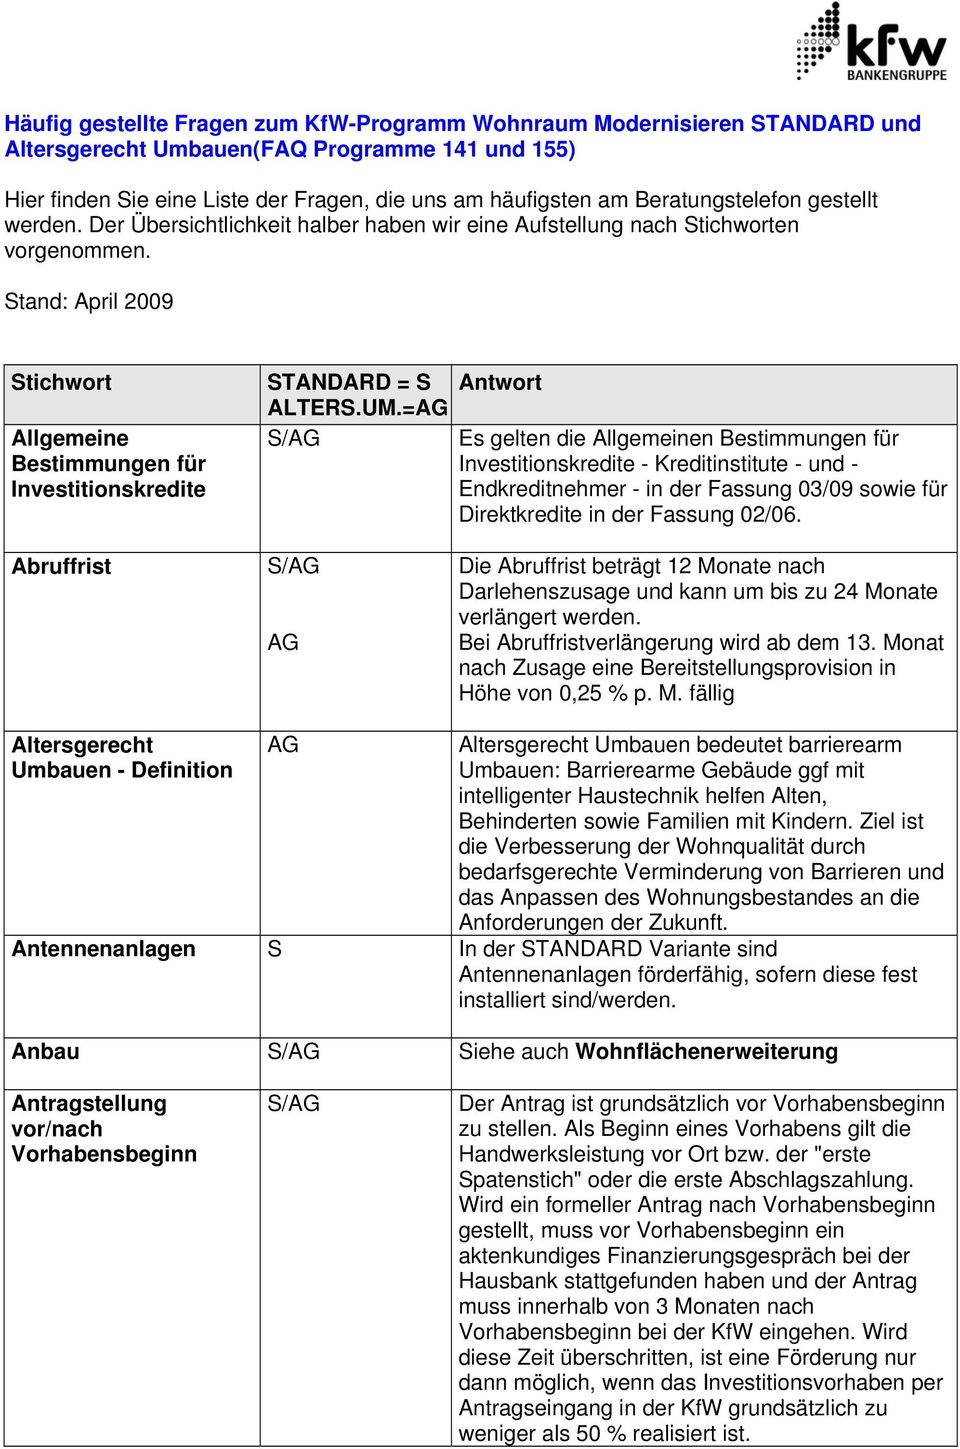 tand: April 2009 tichwort Allgemeine Bestimmungen für Investitionskredite TANDARD = ALTER.UM.